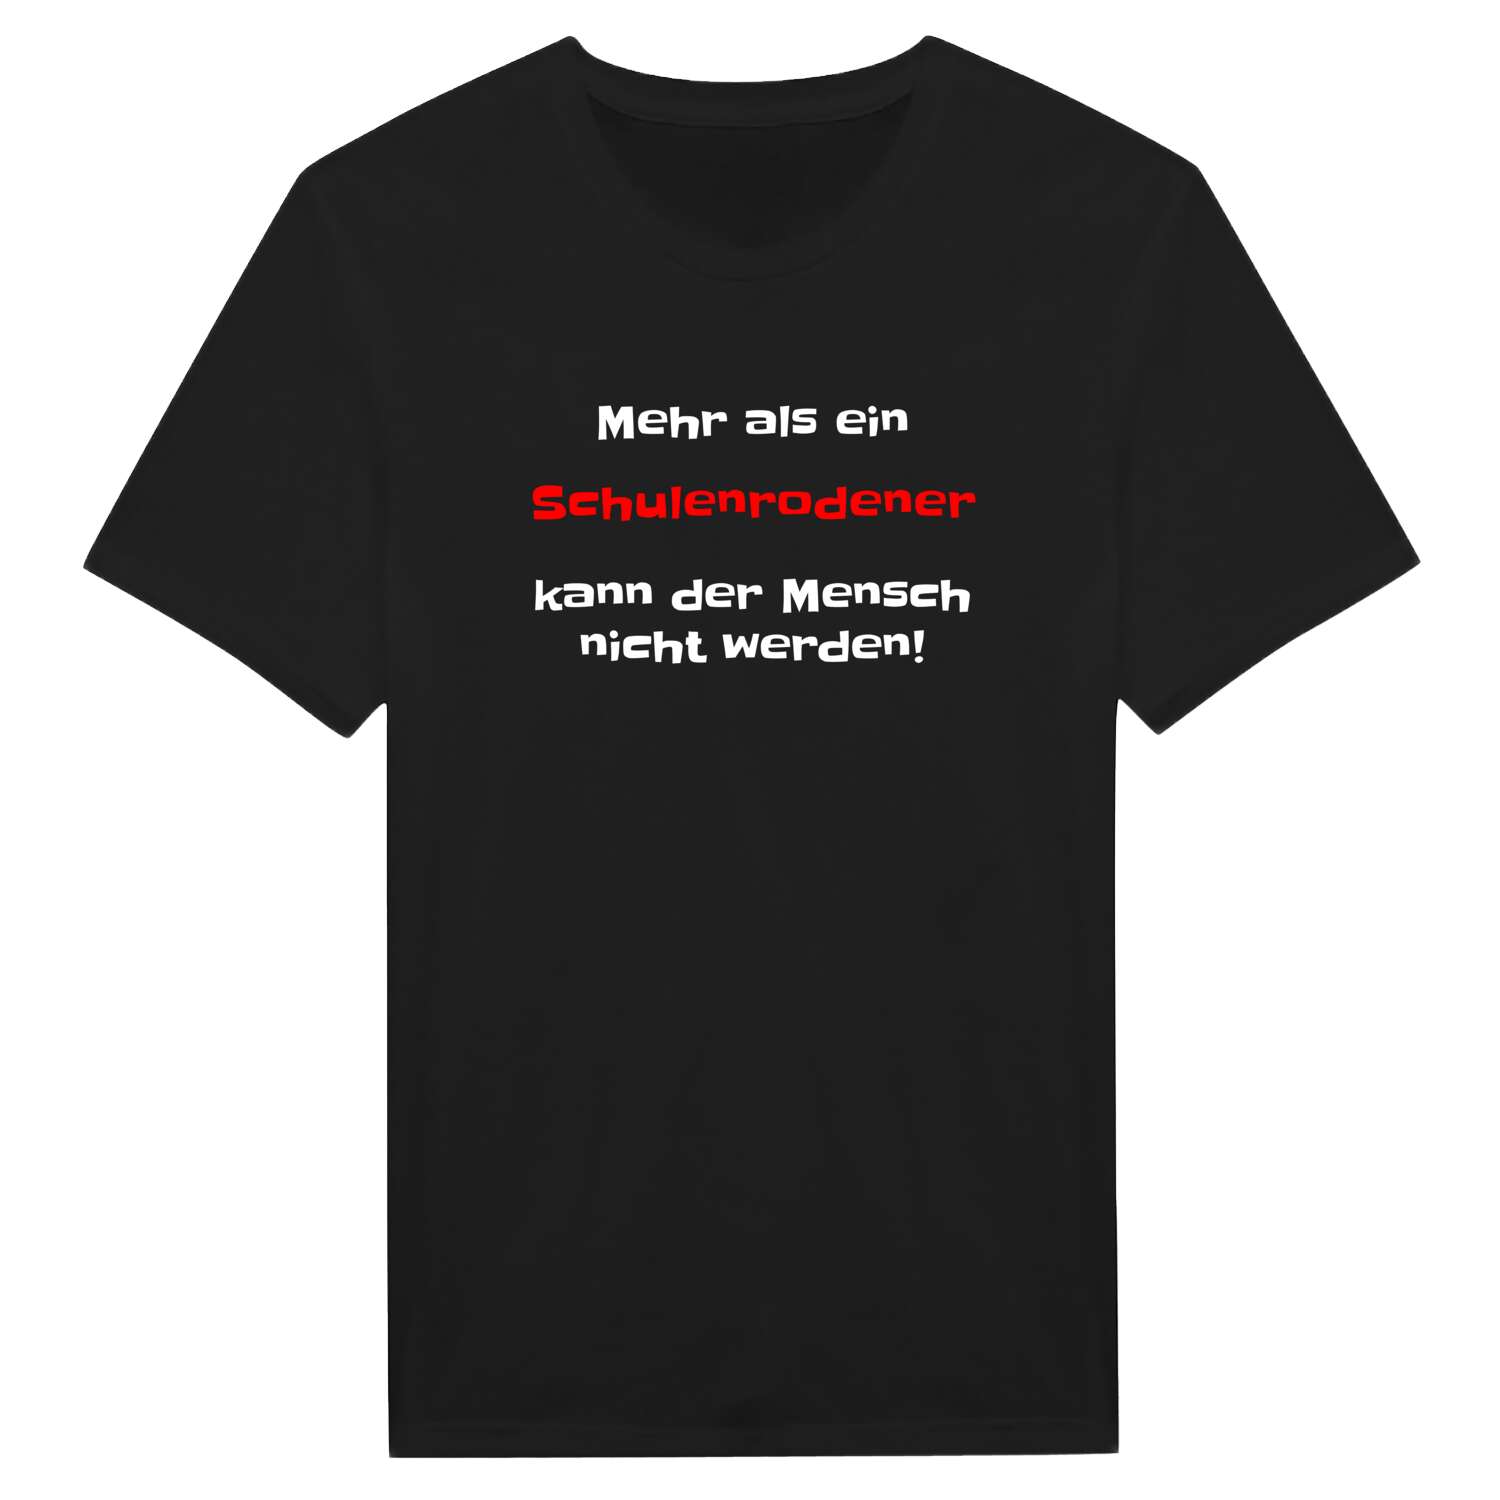 Schulenrode T-Shirt »Mehr als ein«